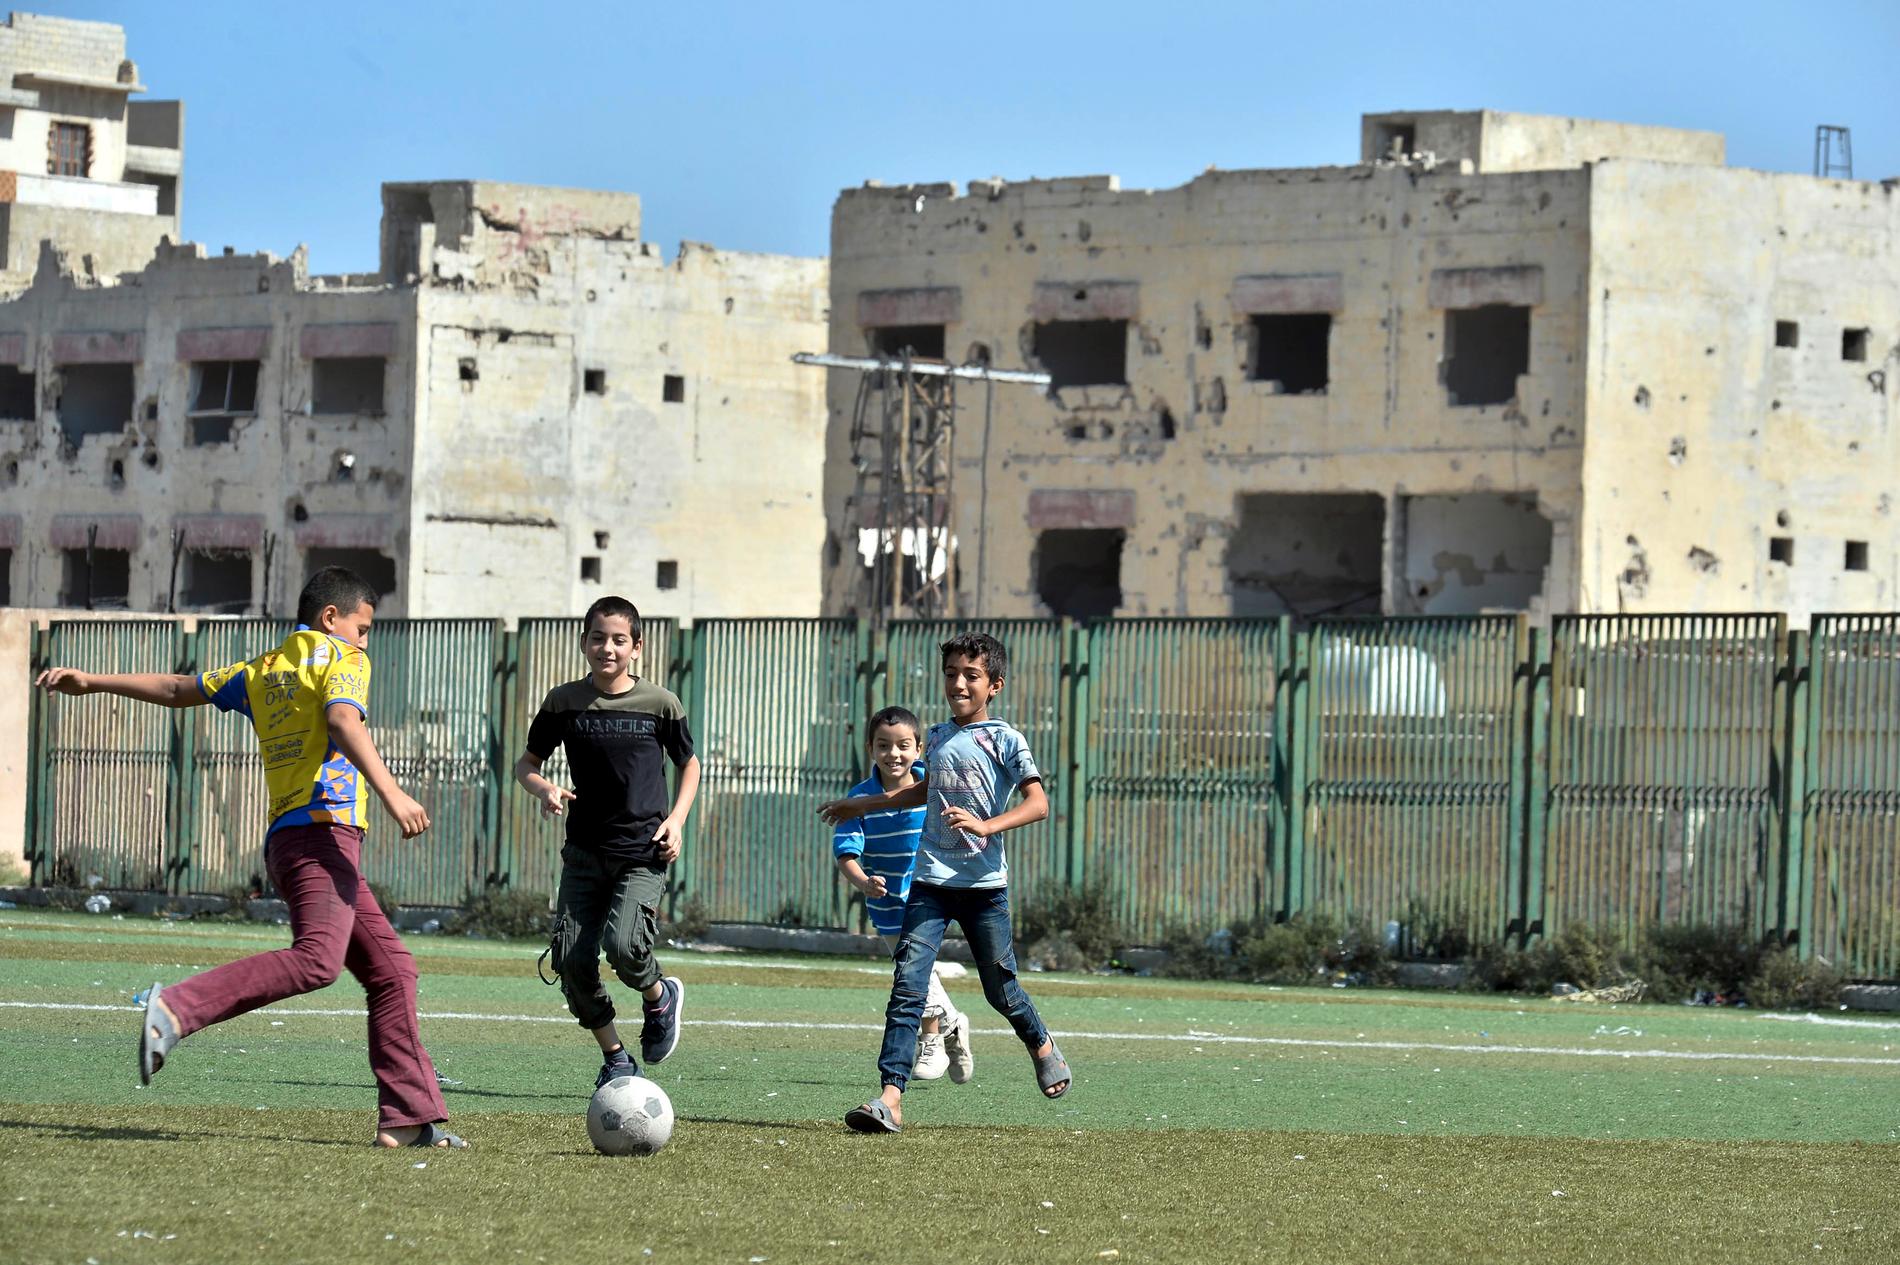 Pojkar spelar fotboll i Ariha i provinsen Idlib. Bilden är från den 20 september, några dagar efter uppgörelsen om provinsen.